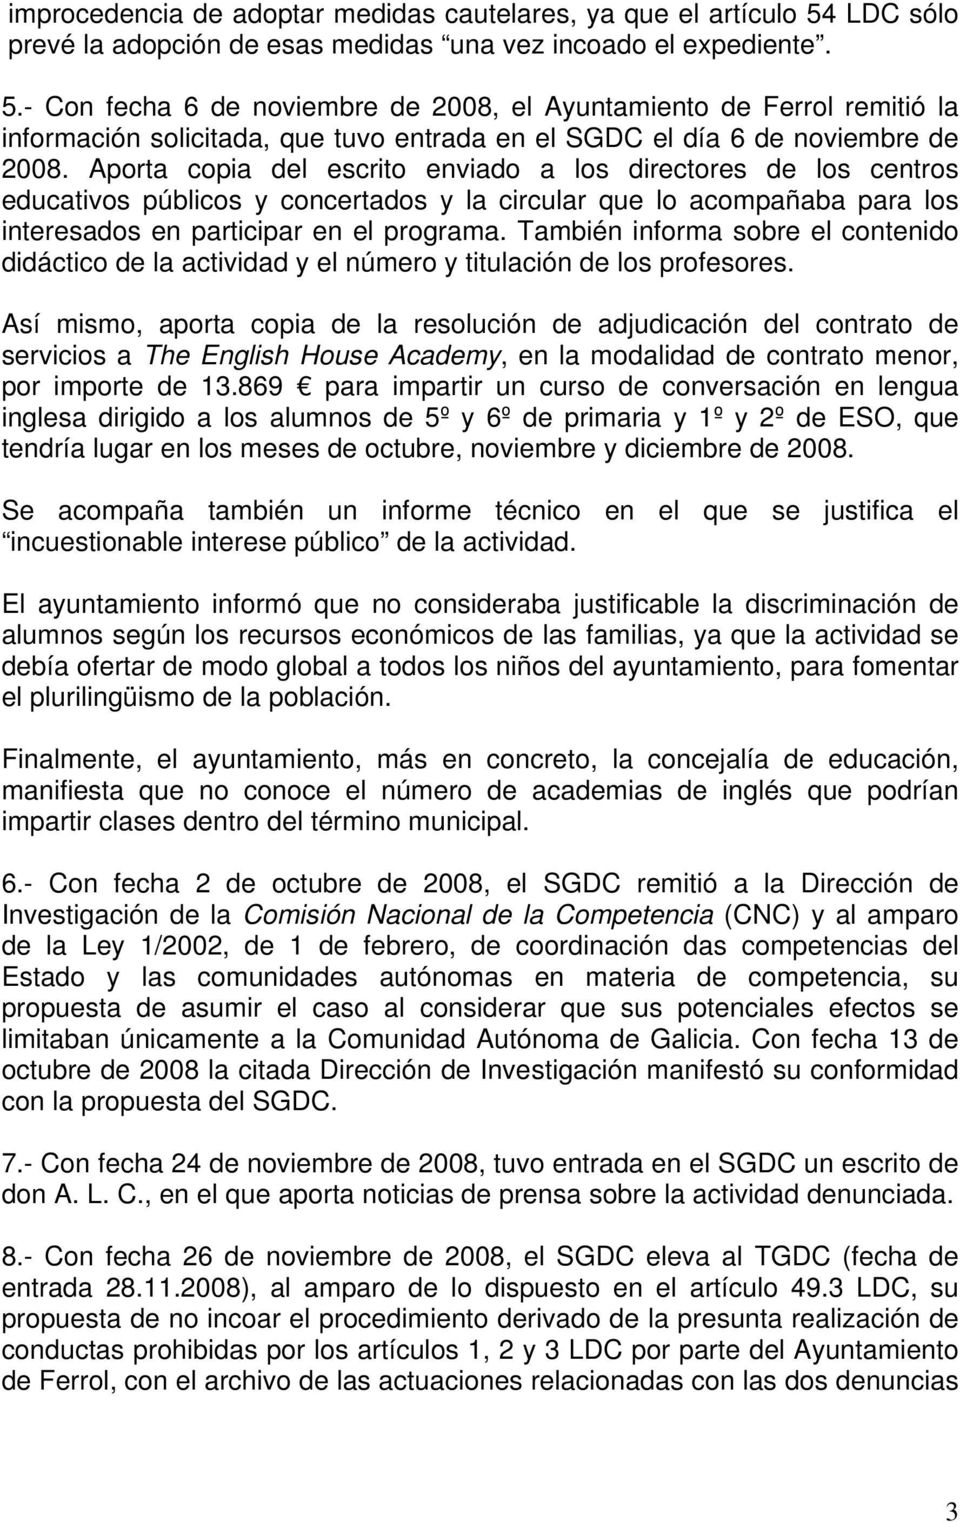 - Con fecha 6 de noviembre de 2008, el Ayuntamiento de Ferrol remitió la información solicitada, que tuvo entrada en el SGDC el día 6 de noviembre de 2008.